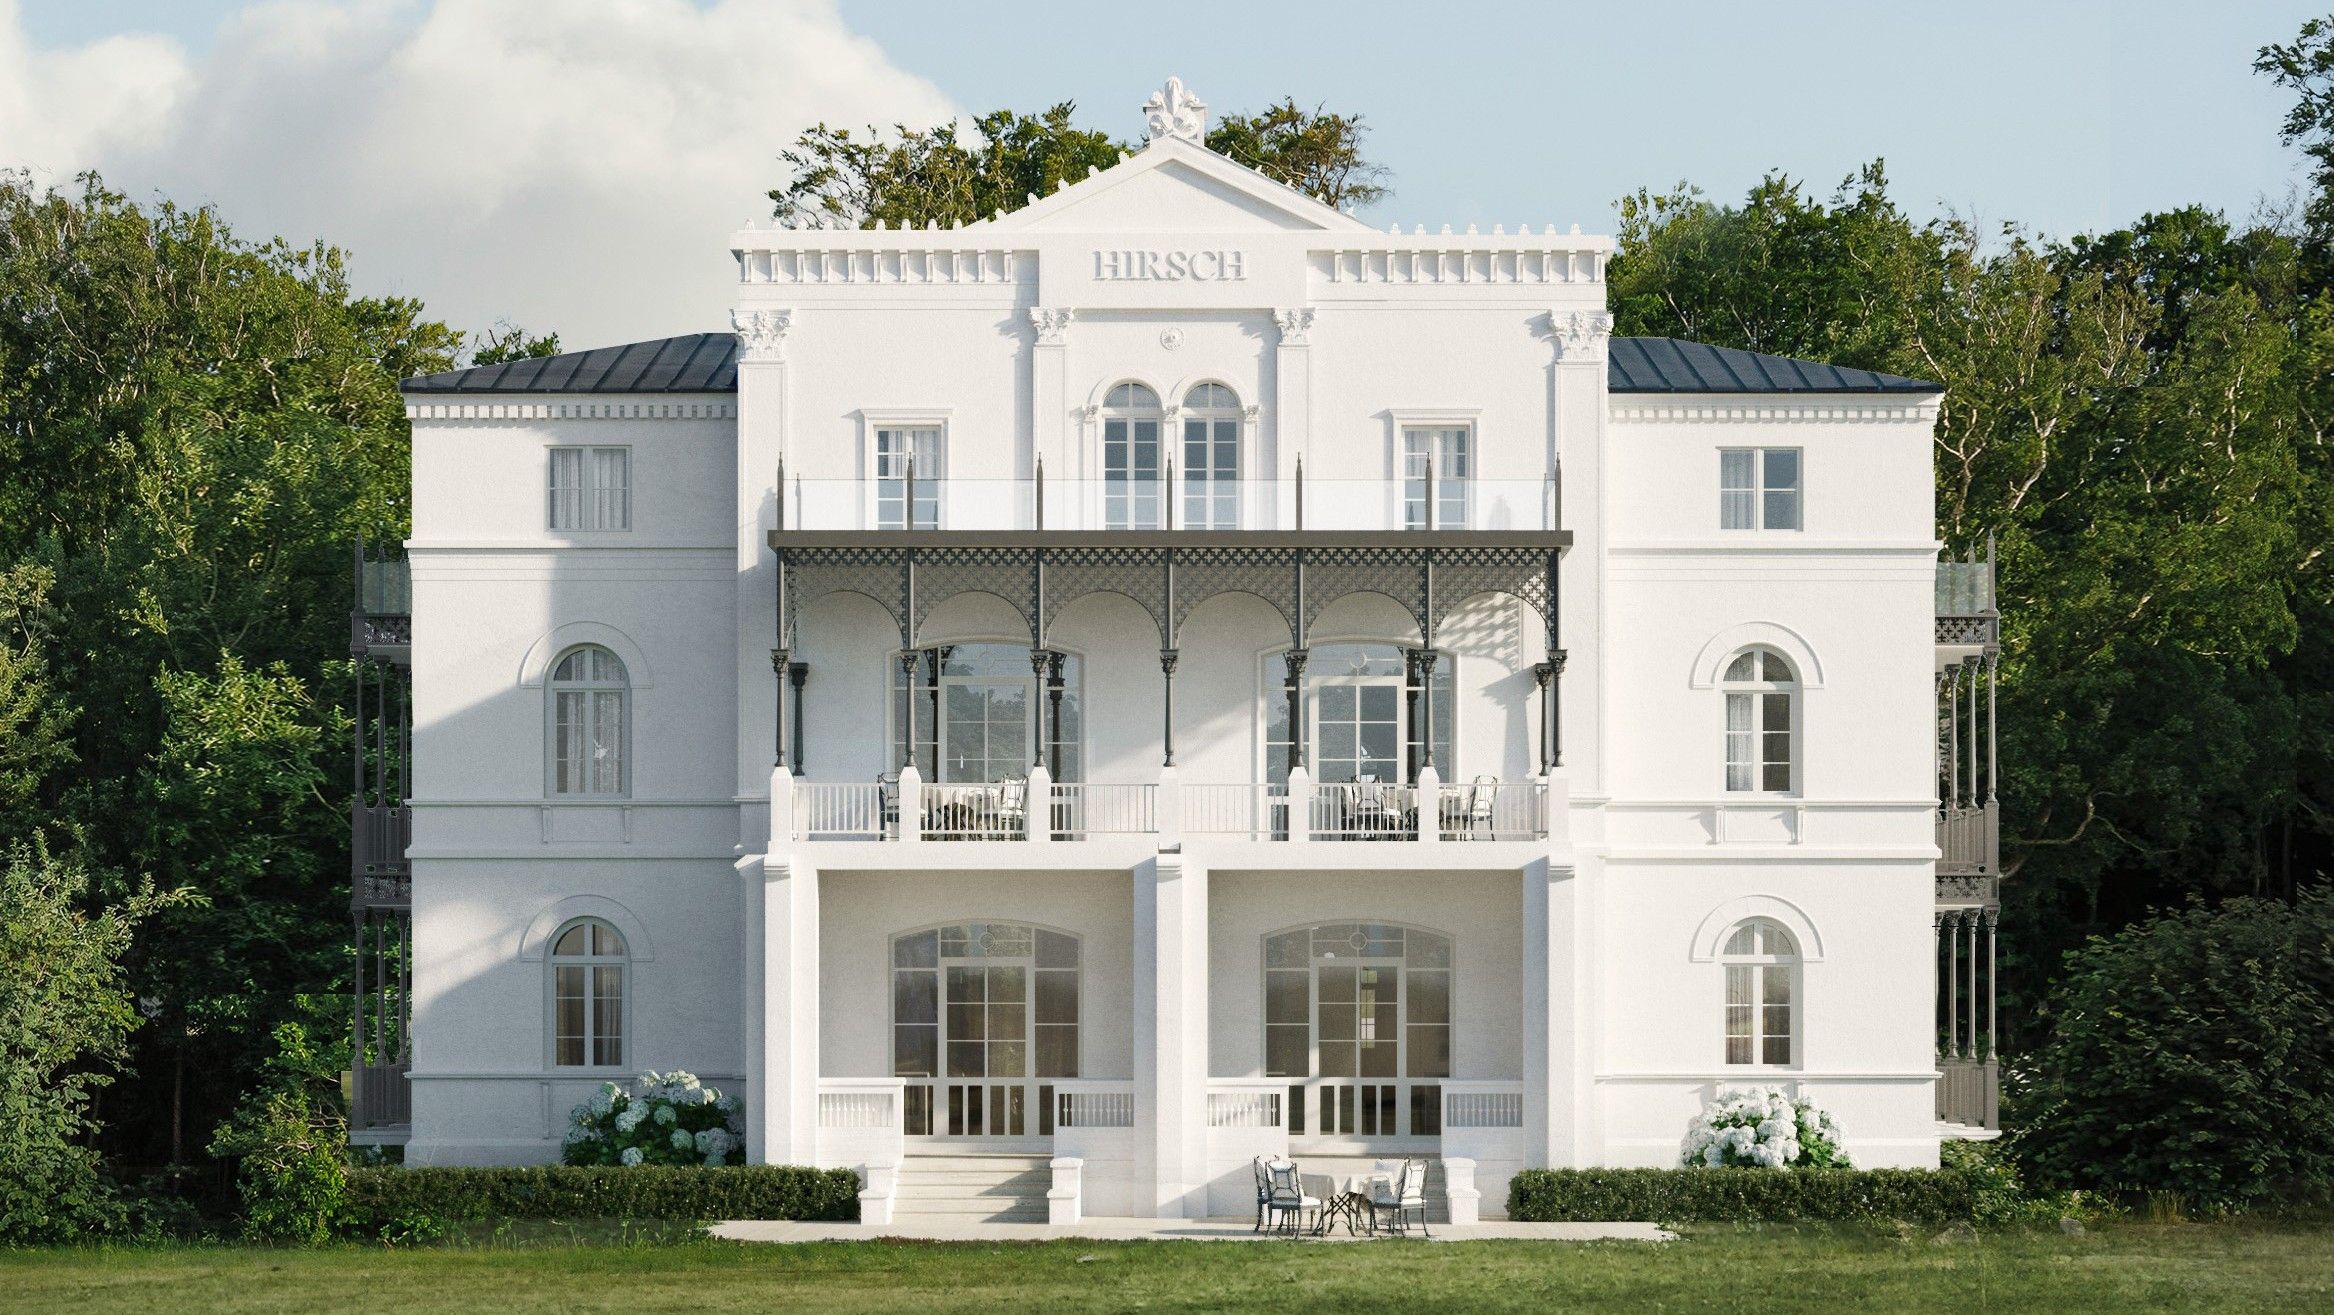 Fotos  Villa Hirsch en la localidad balnearia del mar Báltico de Heiligendamm